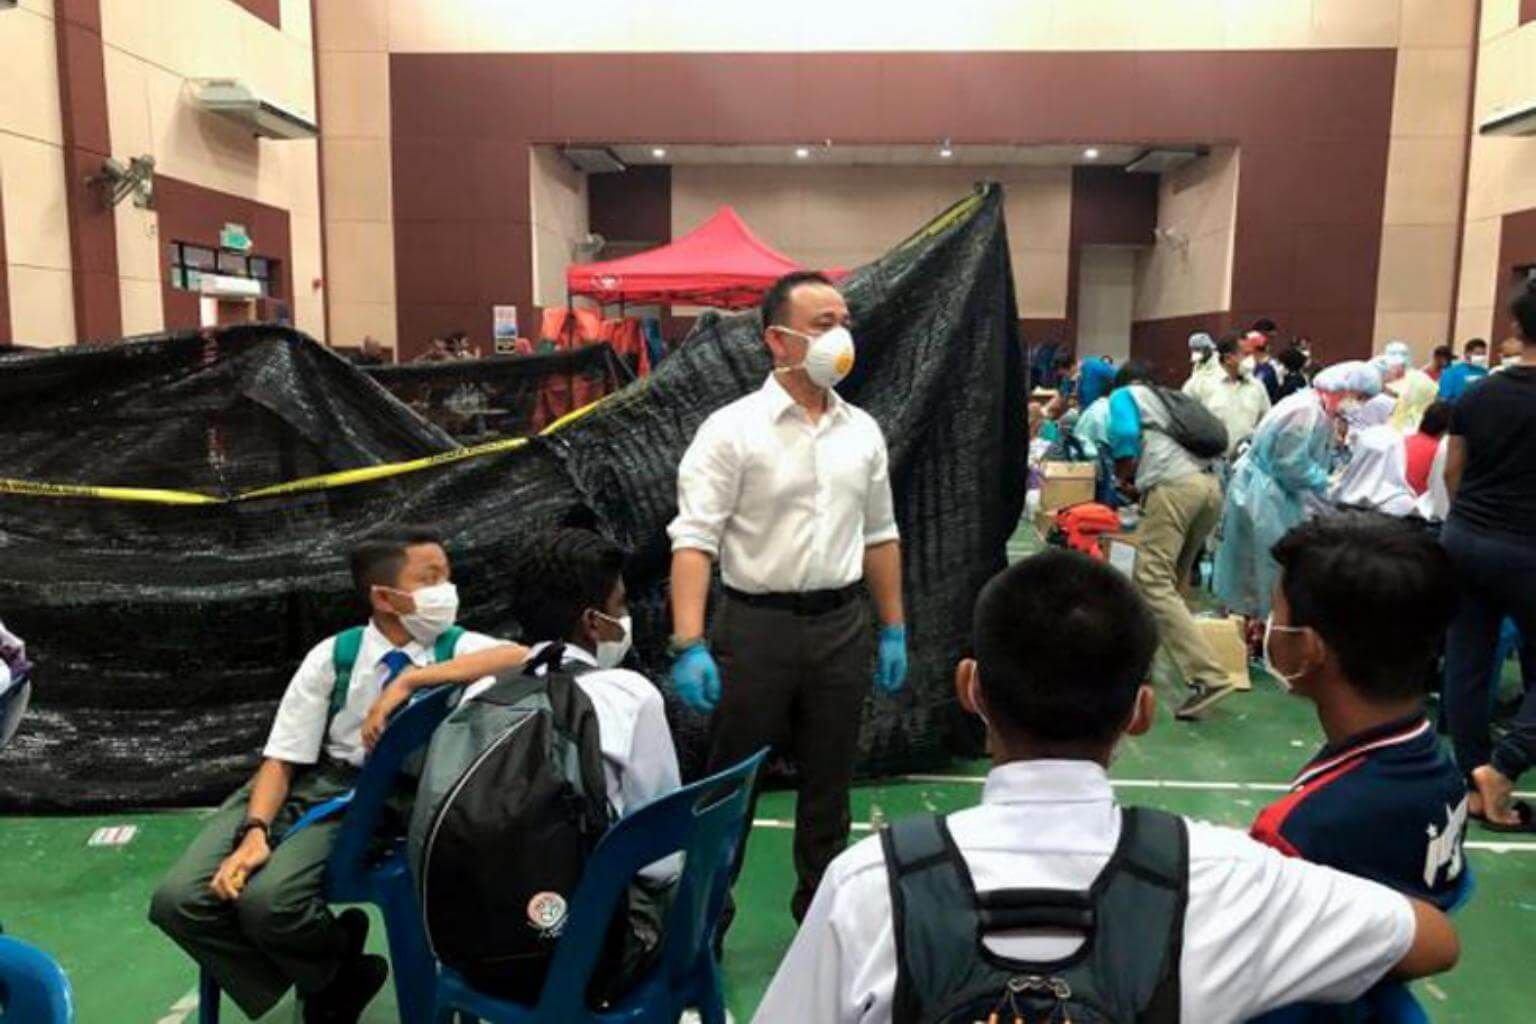 Una fuga química obliga a cerrar más de 100 colegios en Malasia